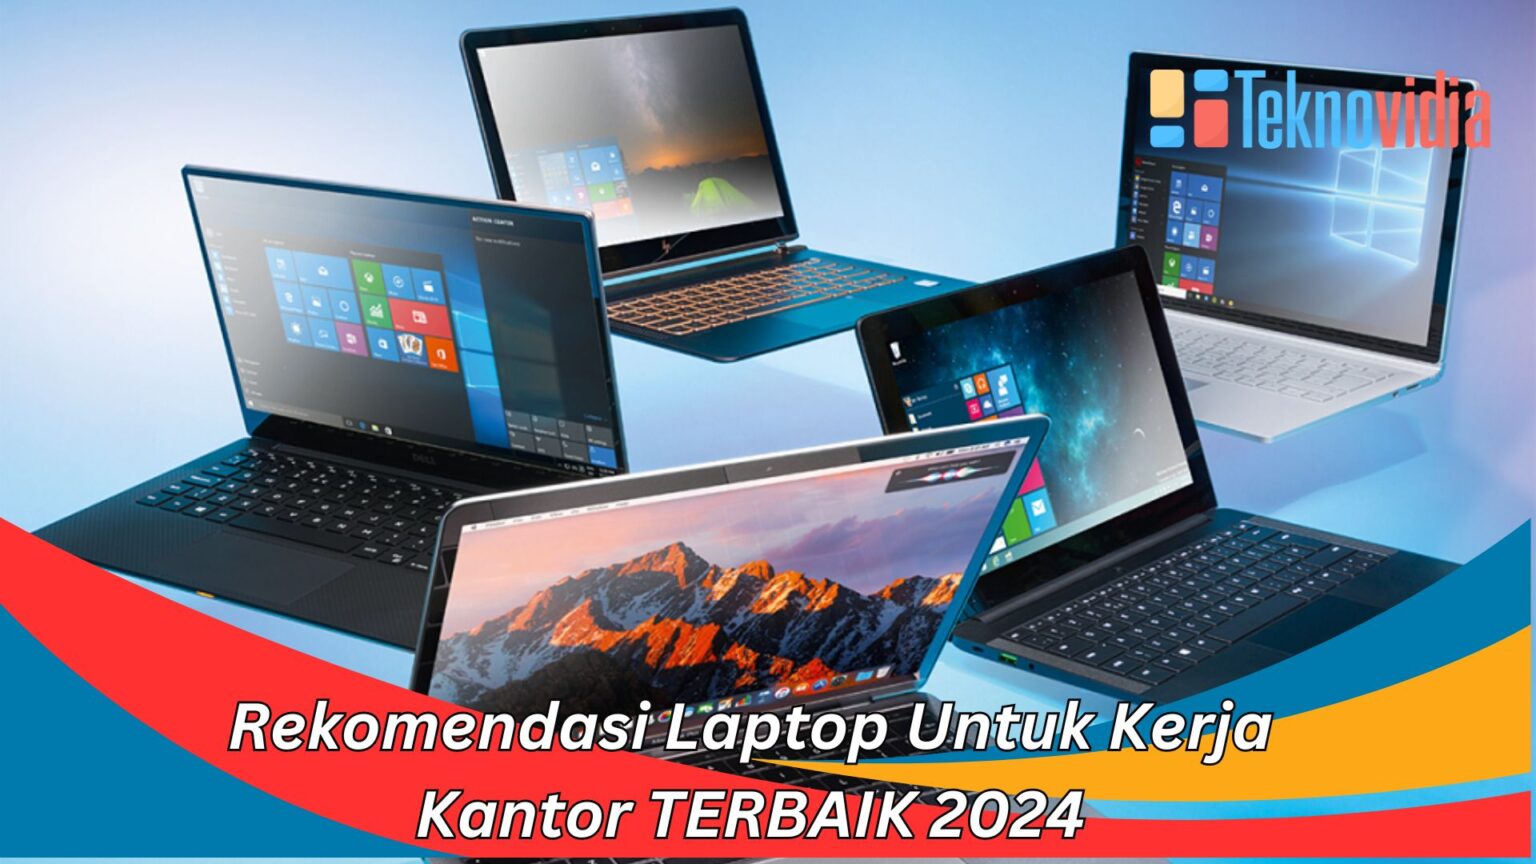 Rekomendasi Laptop Untuk Kerja Kantor TERBAIK 2024 Teknovidia